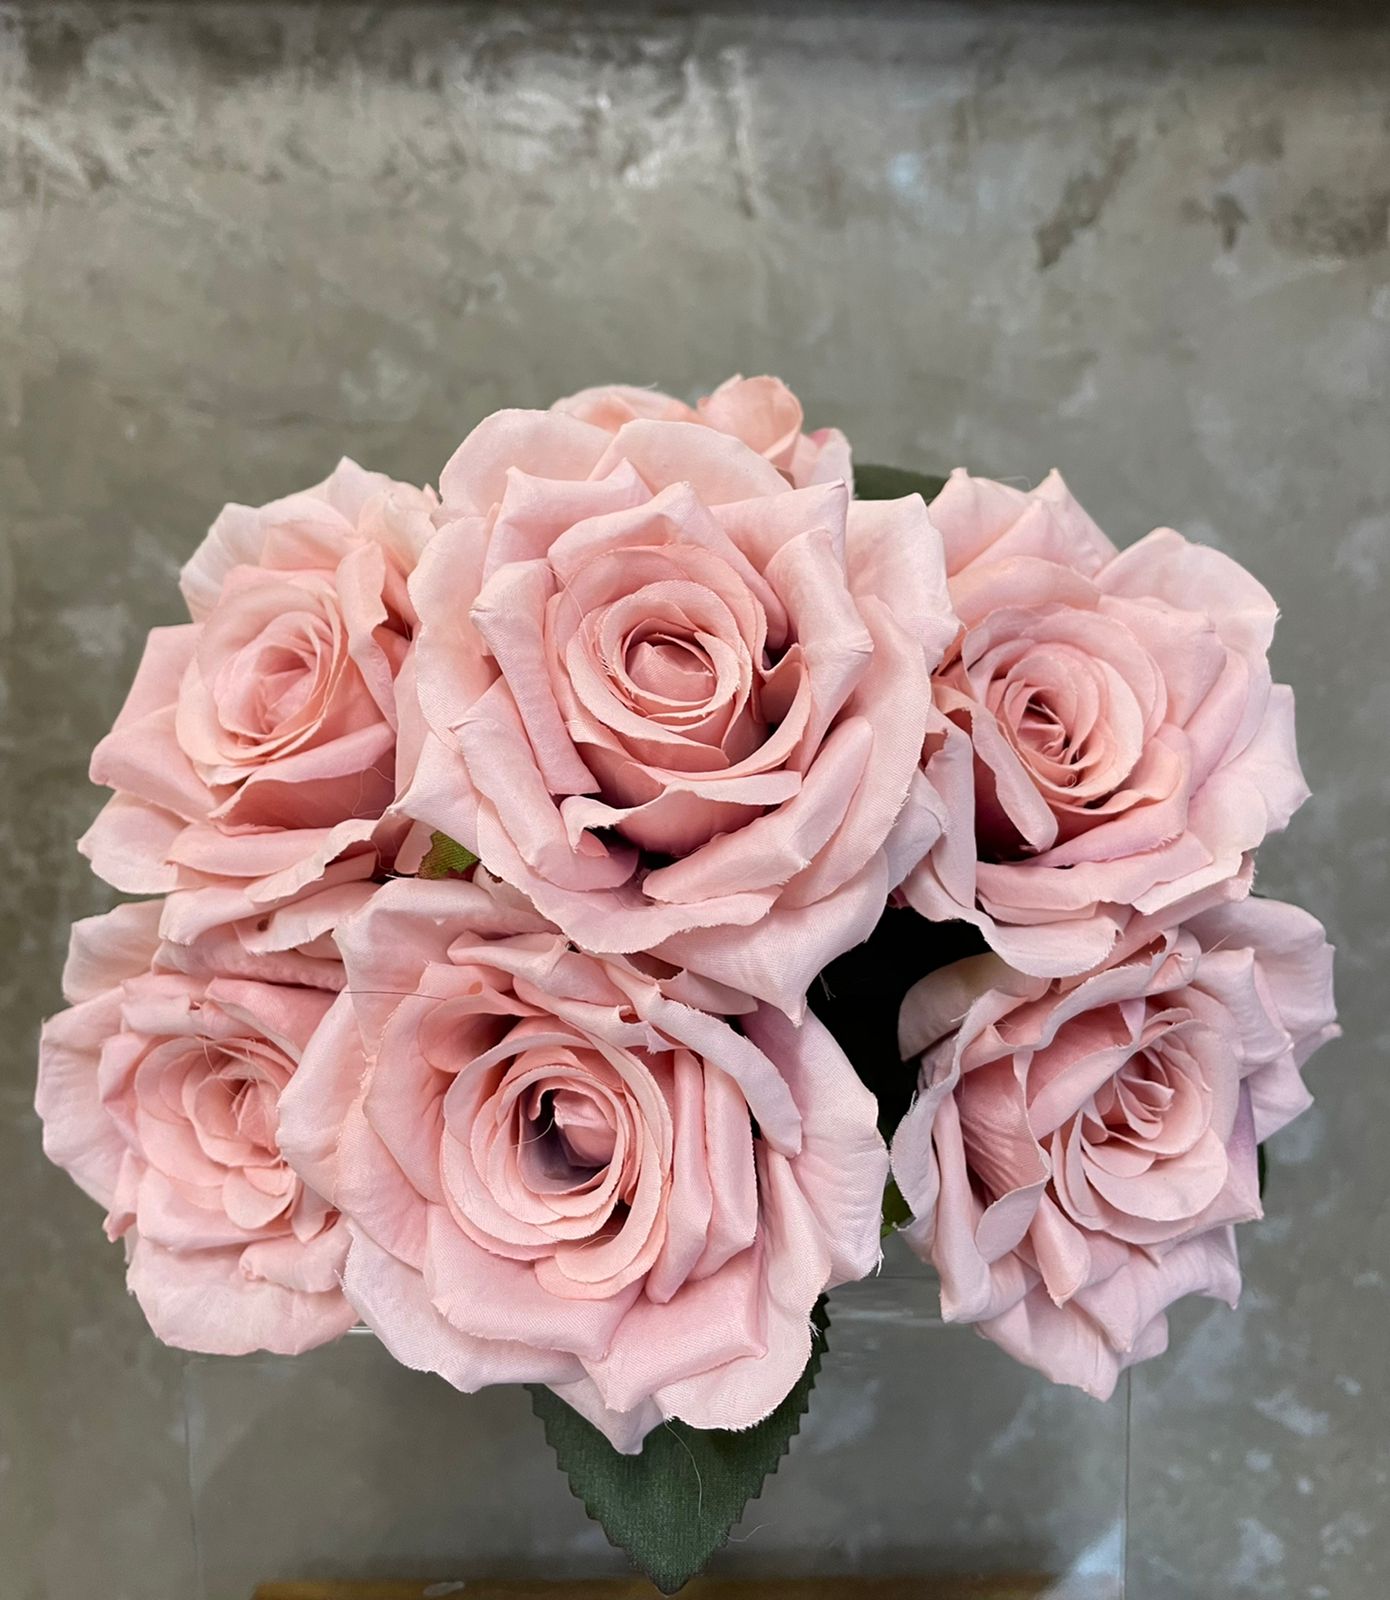 Buque de Rosas - Rosa Claro de 29cm